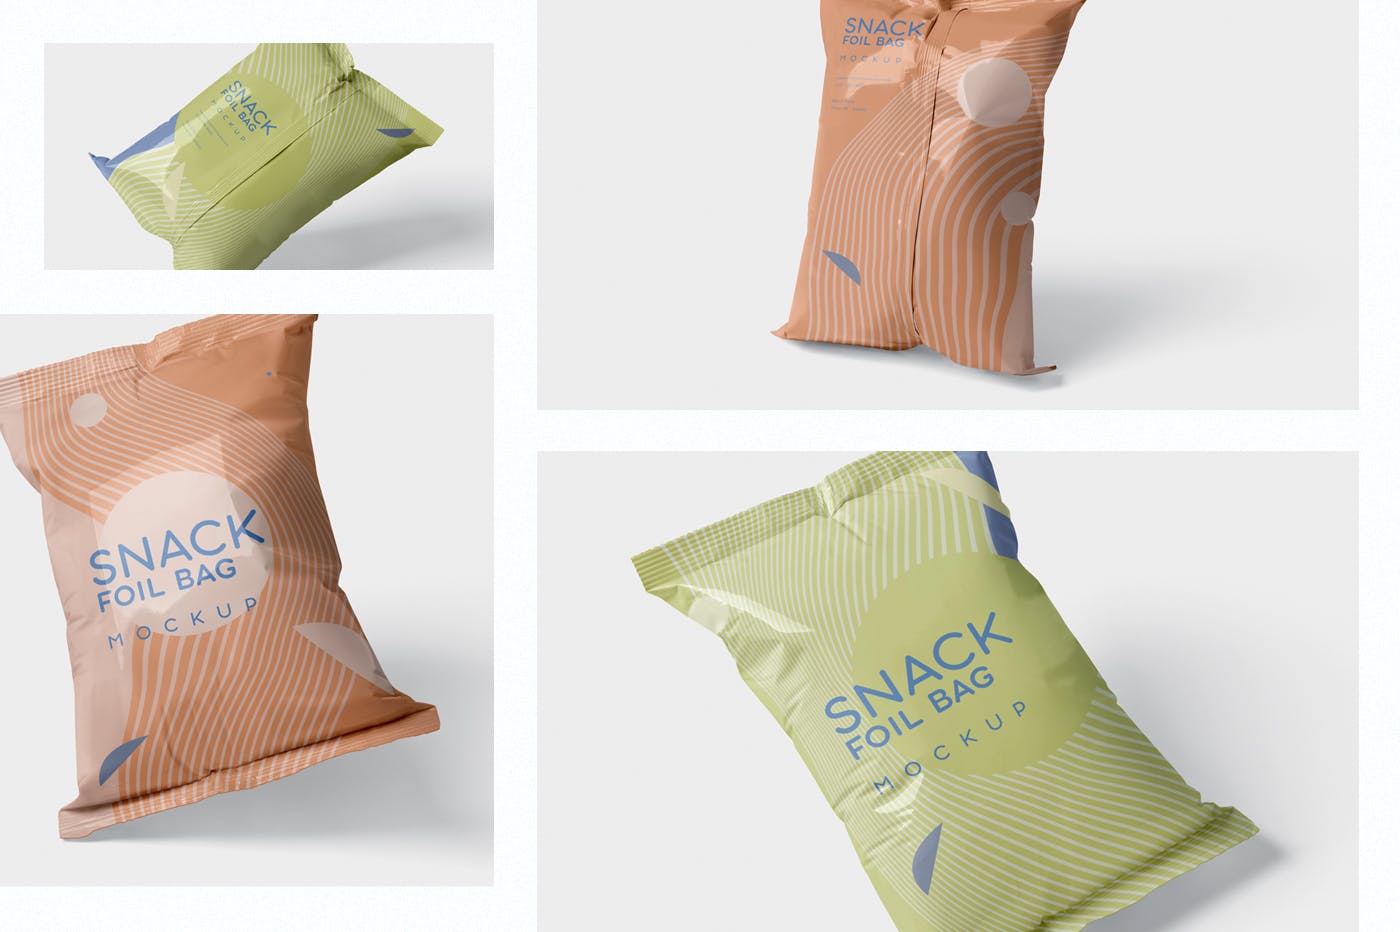 小吃零食铝箔袋/塑料包装袋设计图蚂蚁素材精选 Snack Foil Bag Mockup – Plastic插图(1)